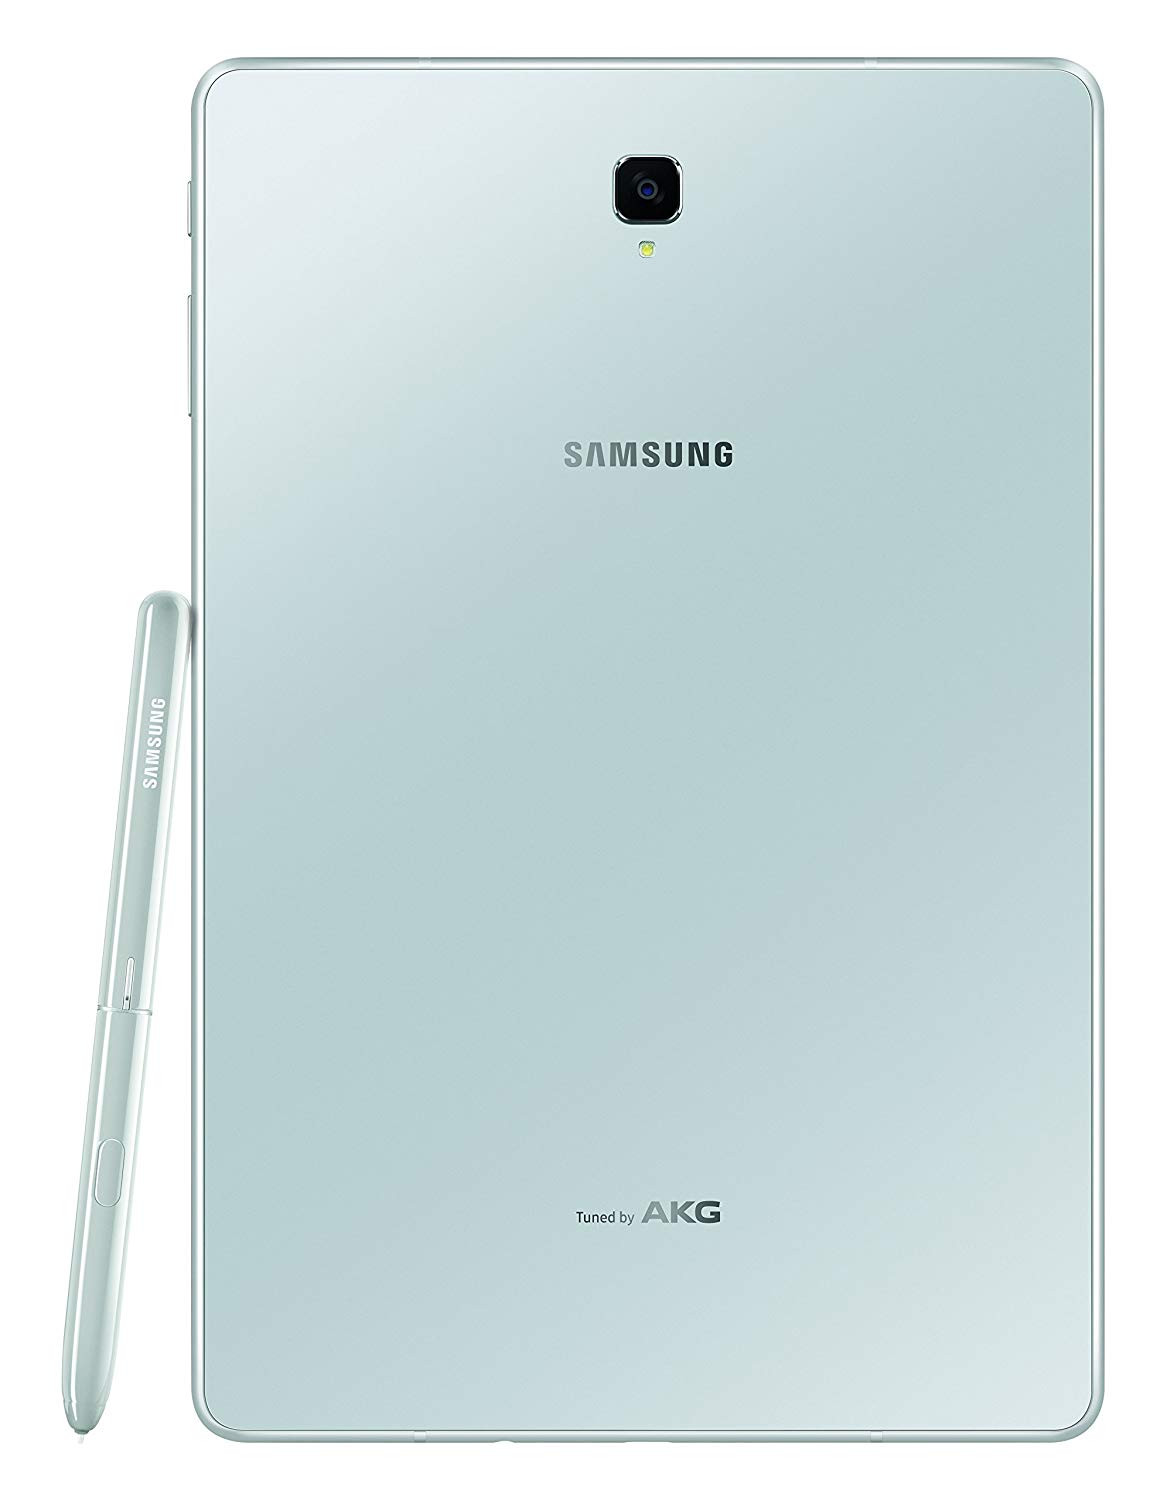 Samsung Galaxy Tab S4 pen 3